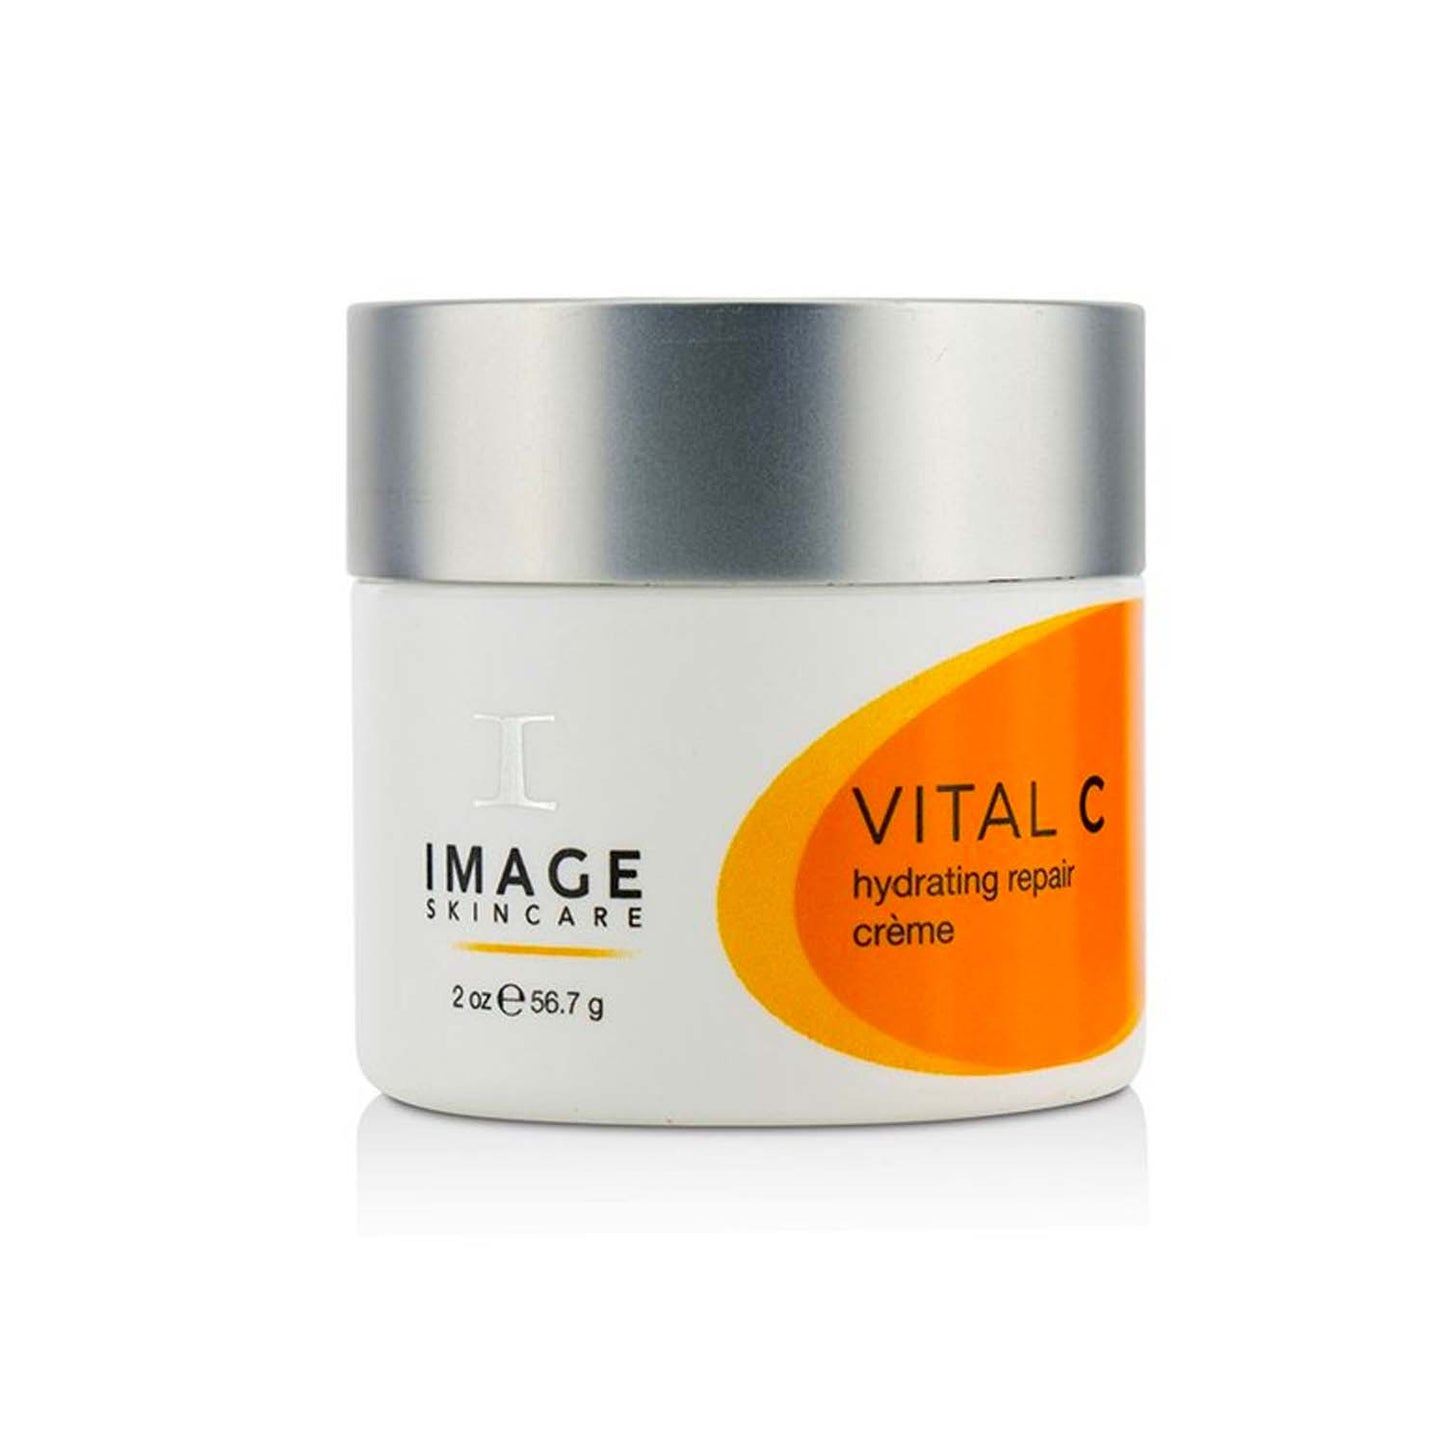 Image Skincare Vital C Hydrating Repair Crème